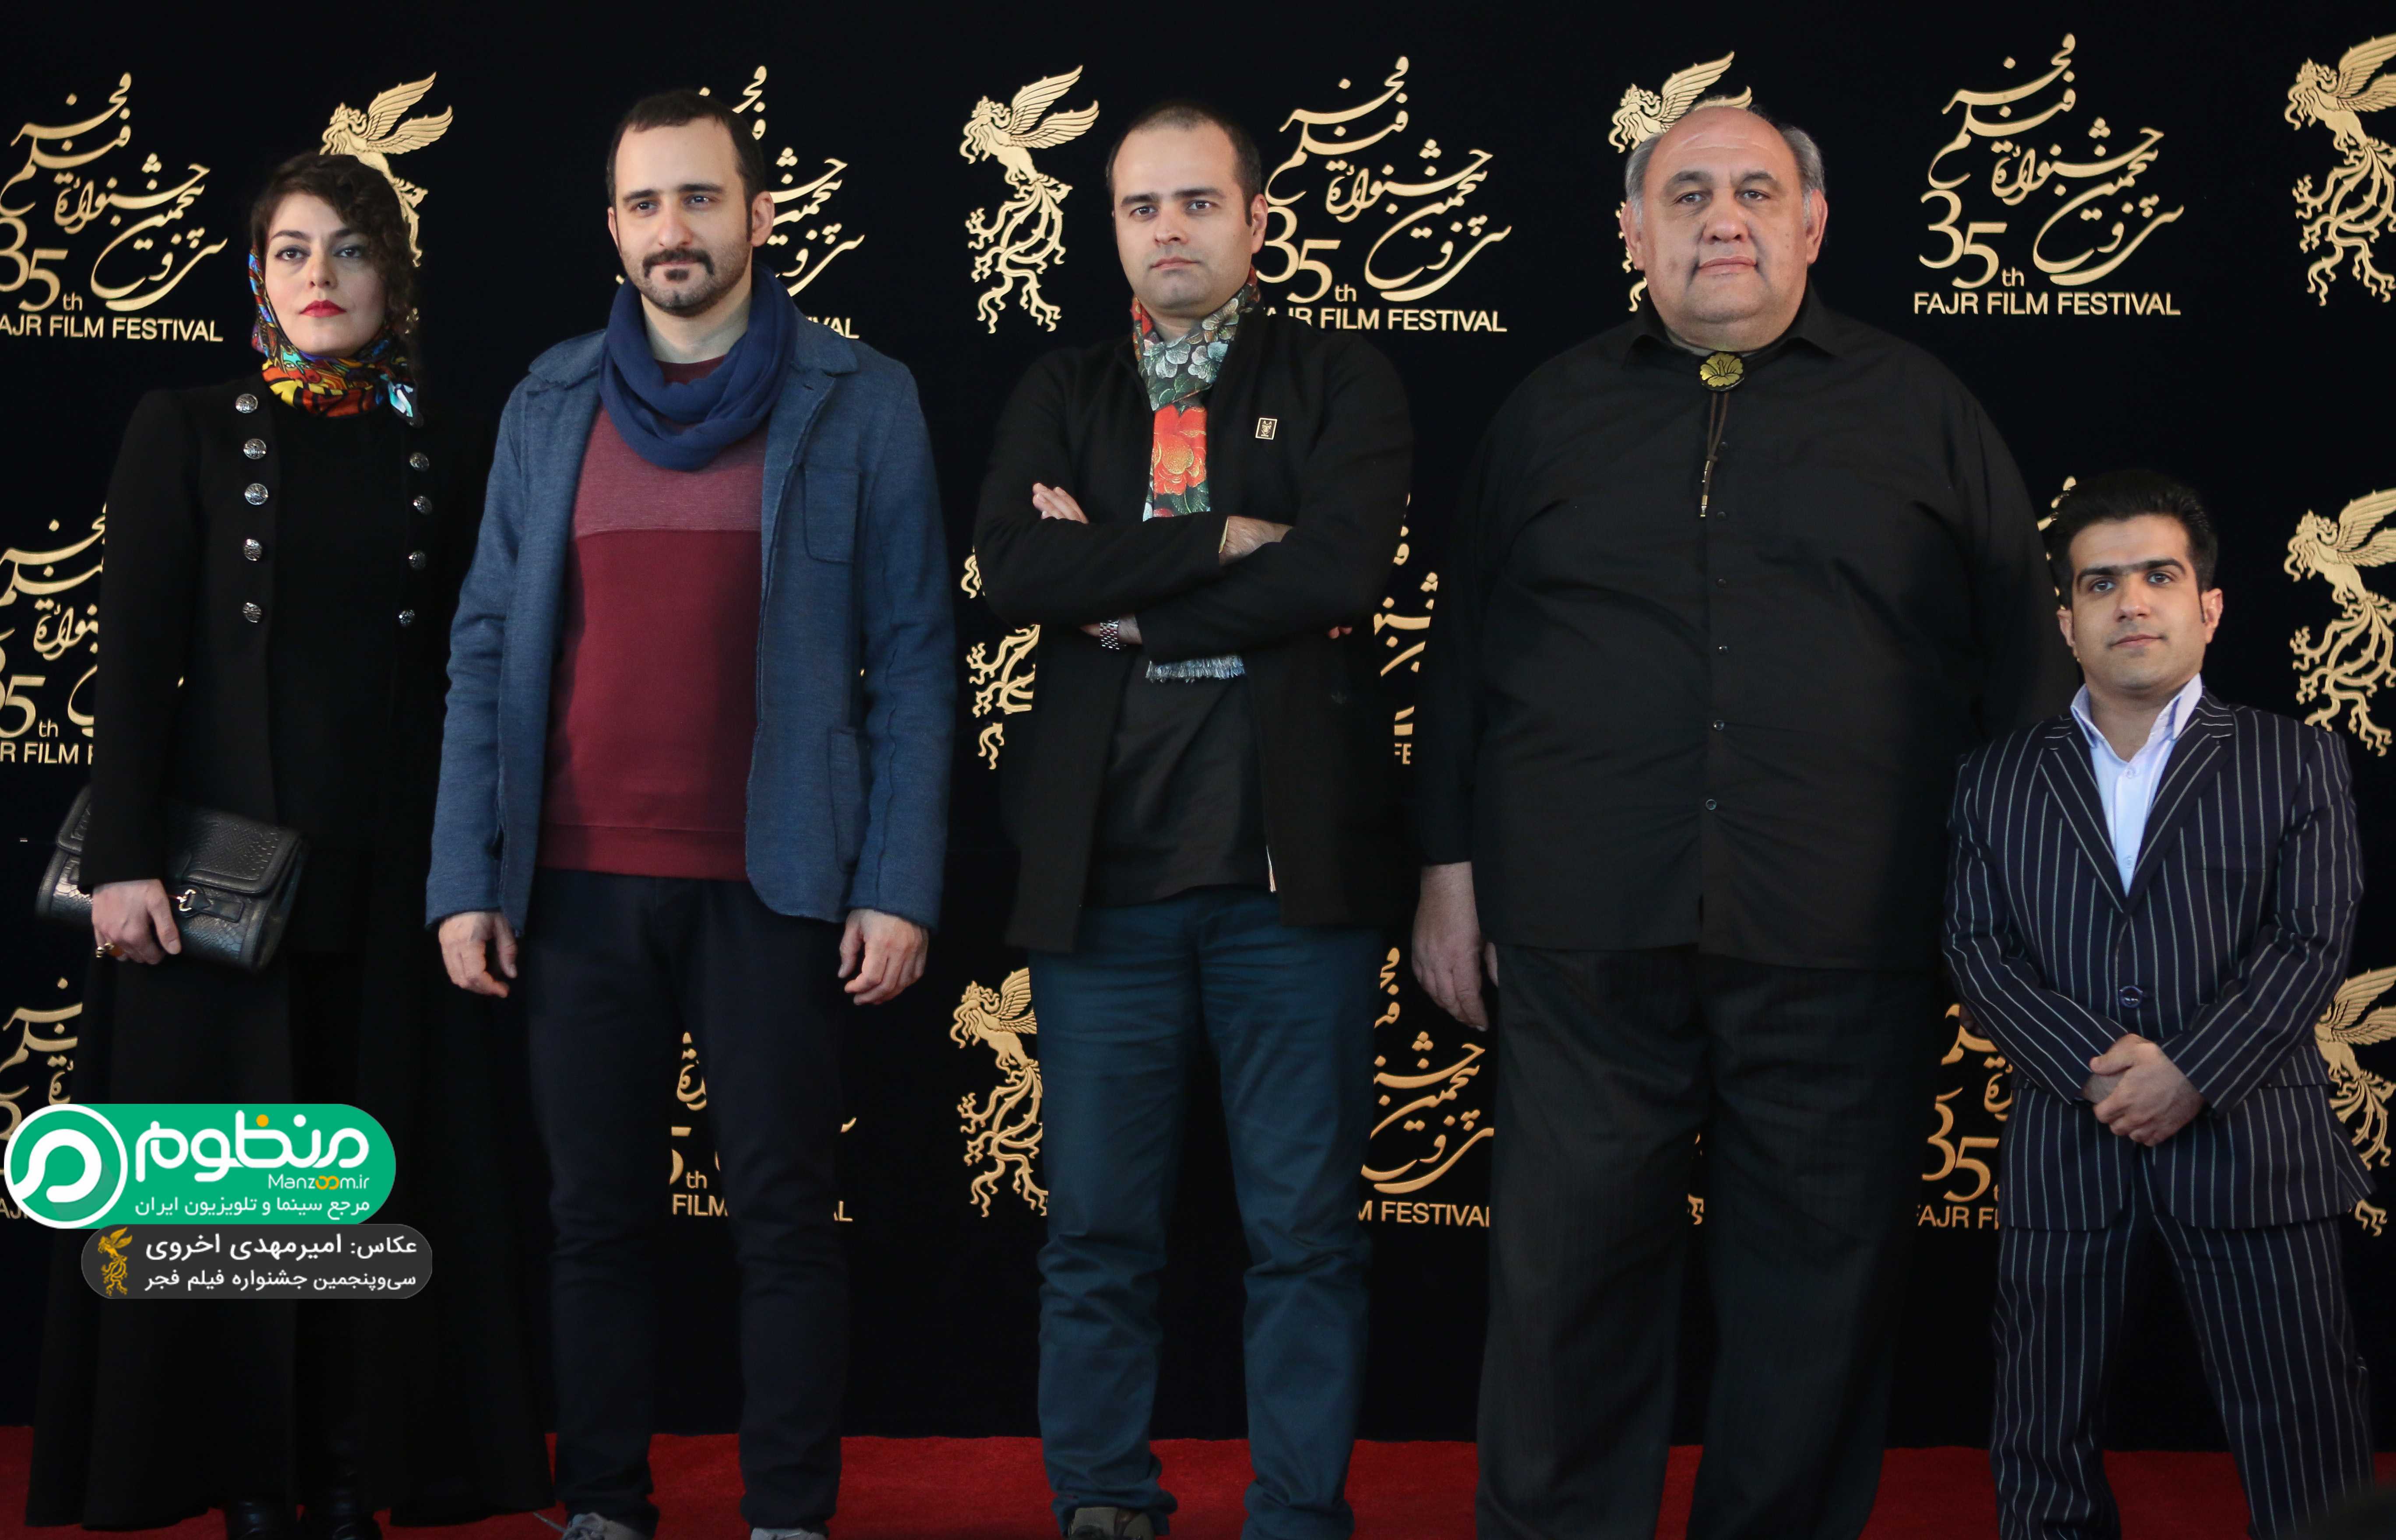 نازنین فراهانی در فرش قرمز فیلم سینمایی کوپال به همراه لوون هفتوان، کاظم ملایی و پوریا رحیمی‌سام